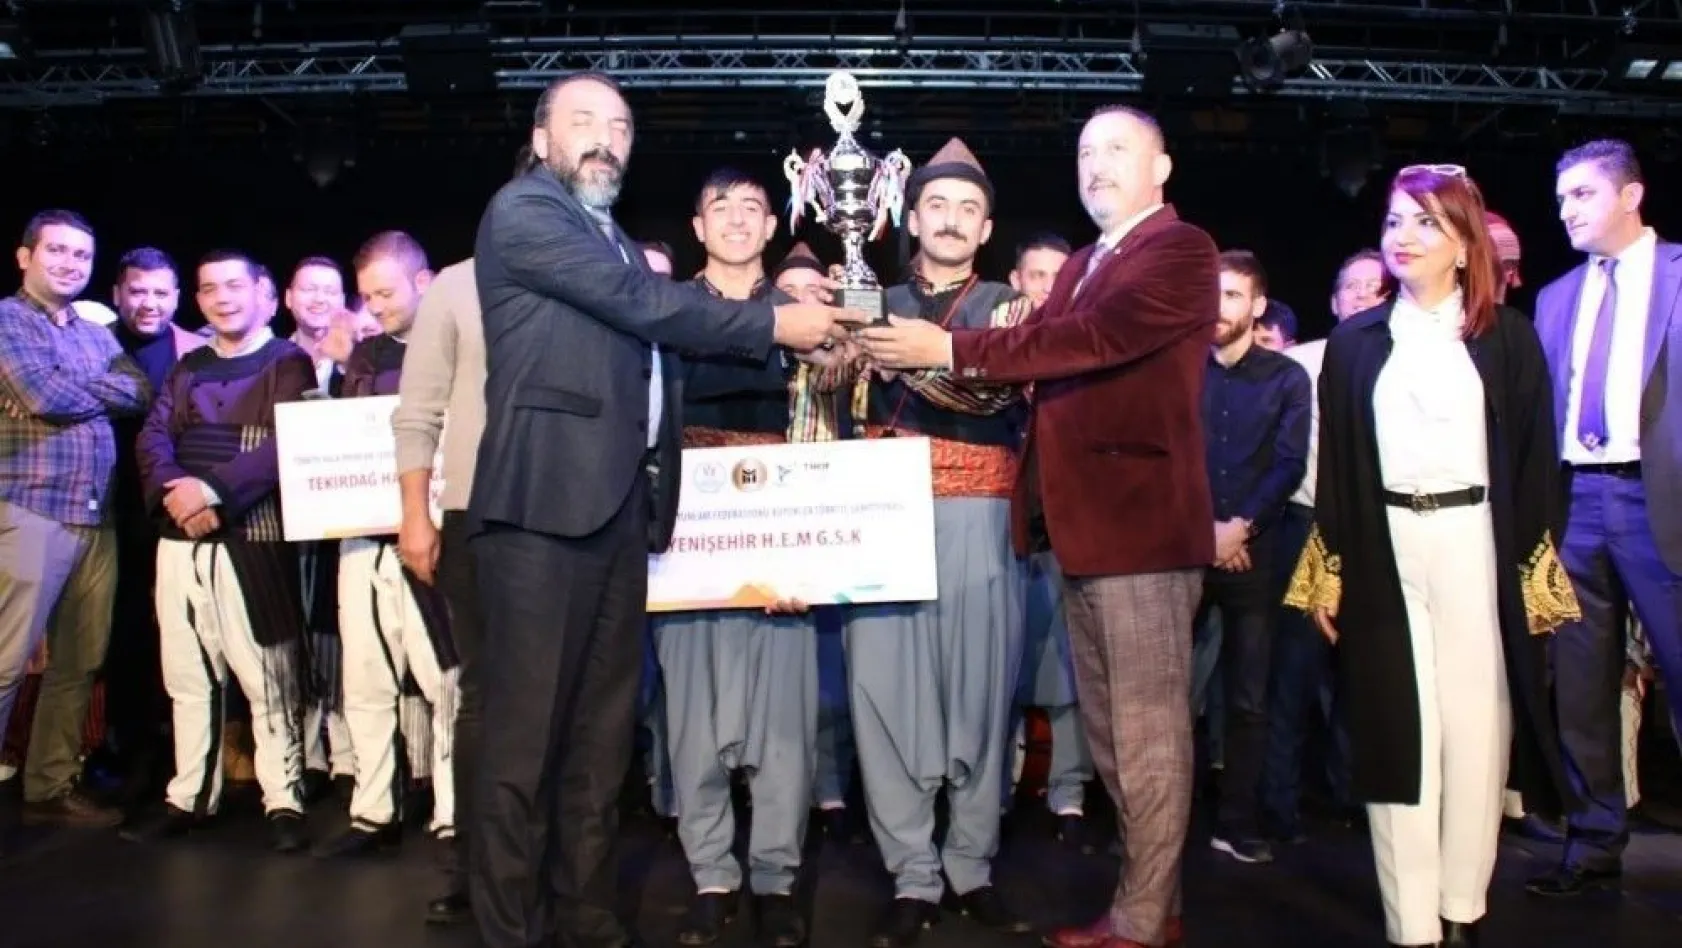 Diyarbakır Yenişehir HEM şampiyon oldu
